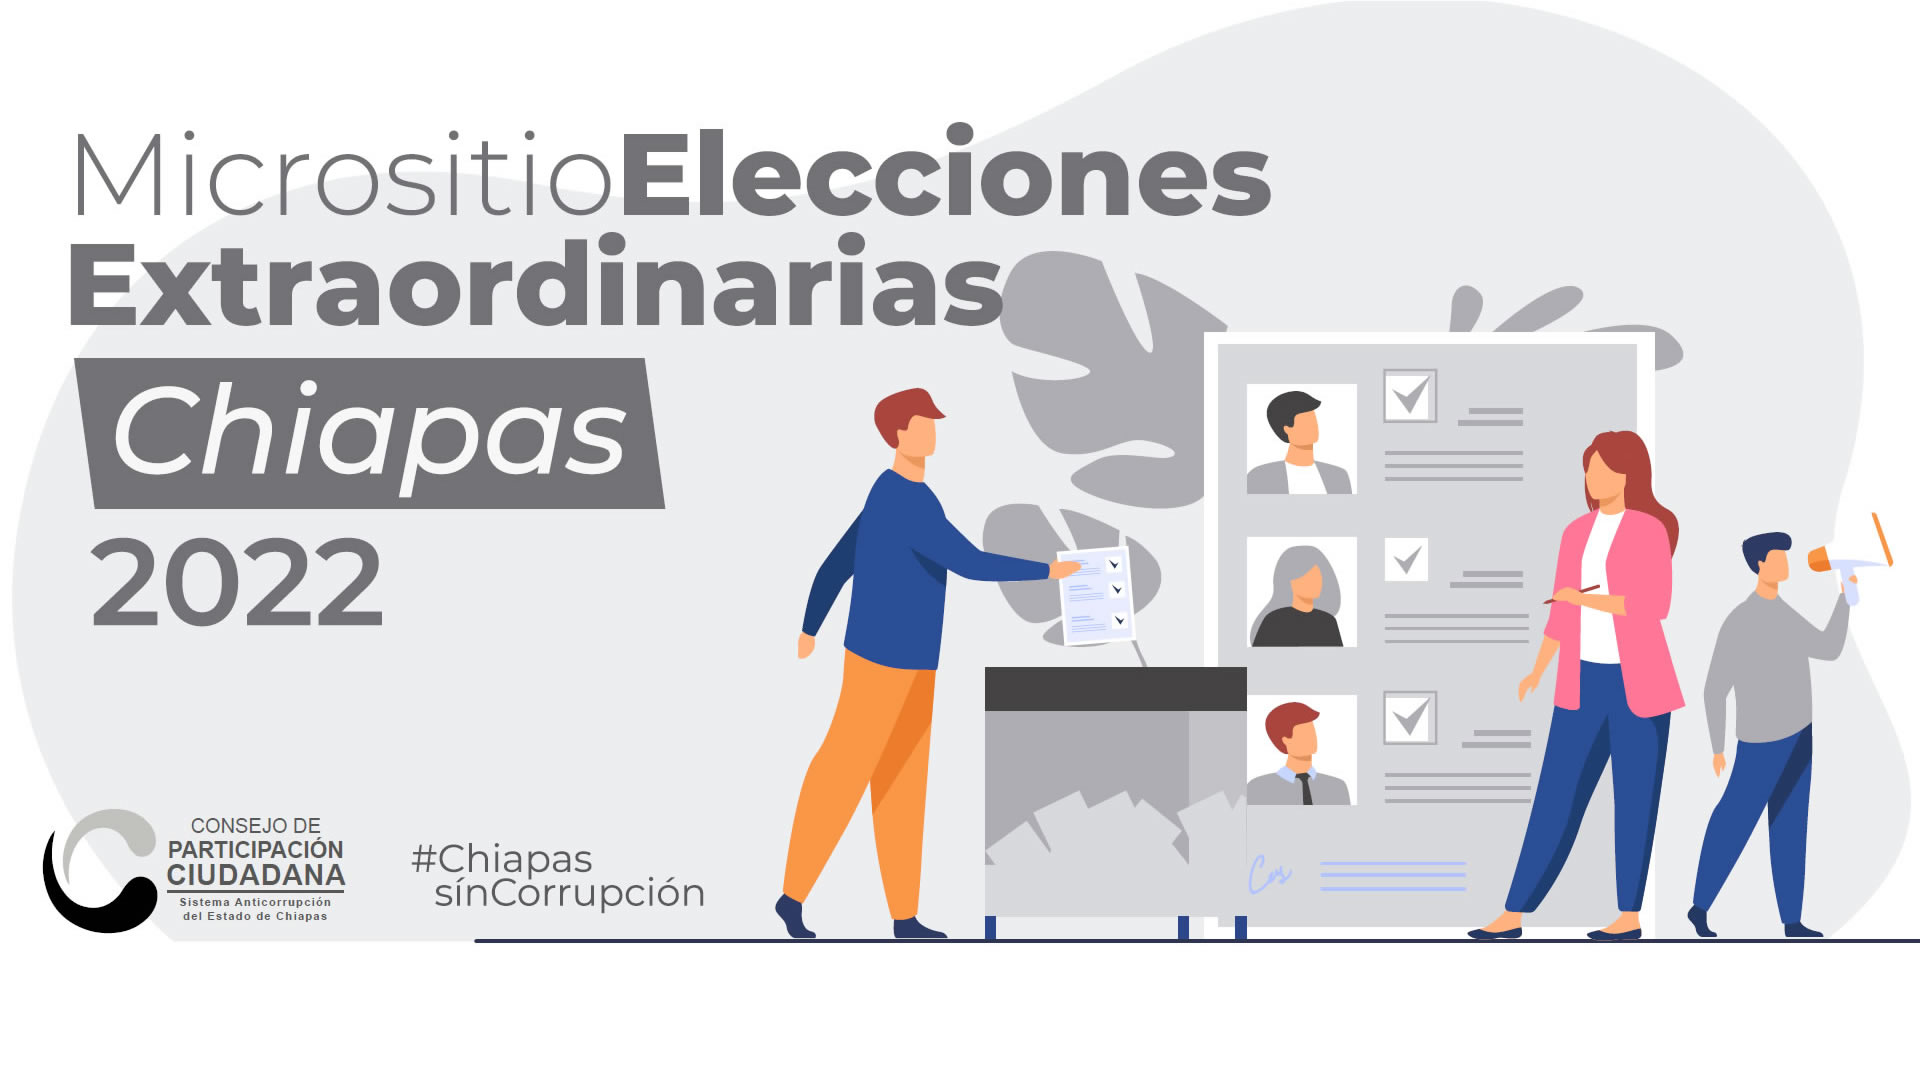 Micrositio de Elecciones Extraordinarias Chiapas 2022